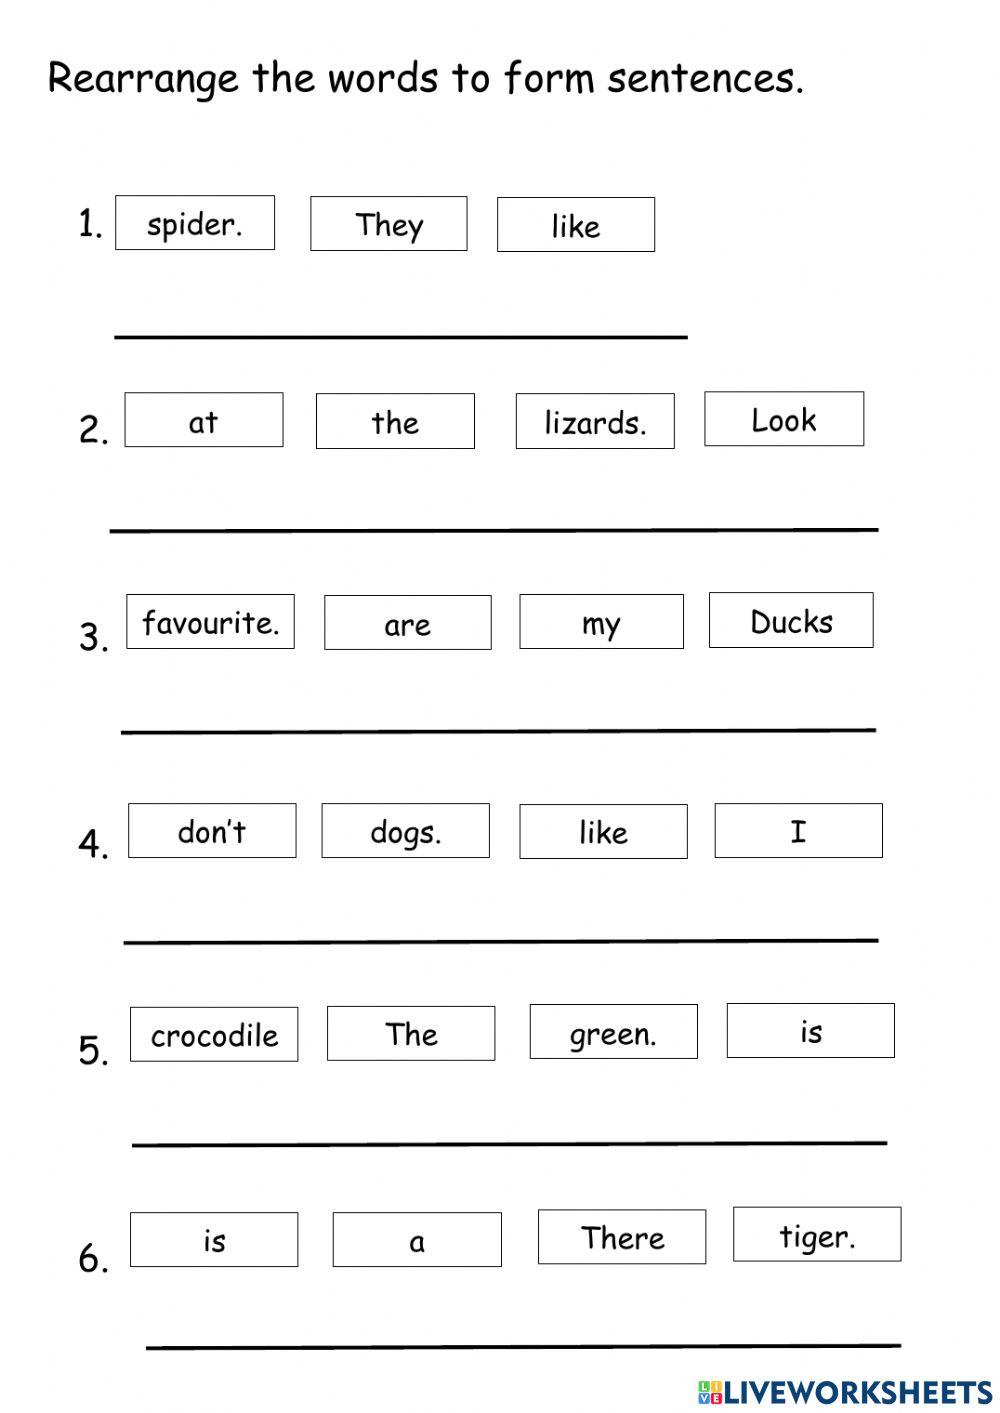 rearrange-the-words-to-form-sentences-worksheet-live-worksheets